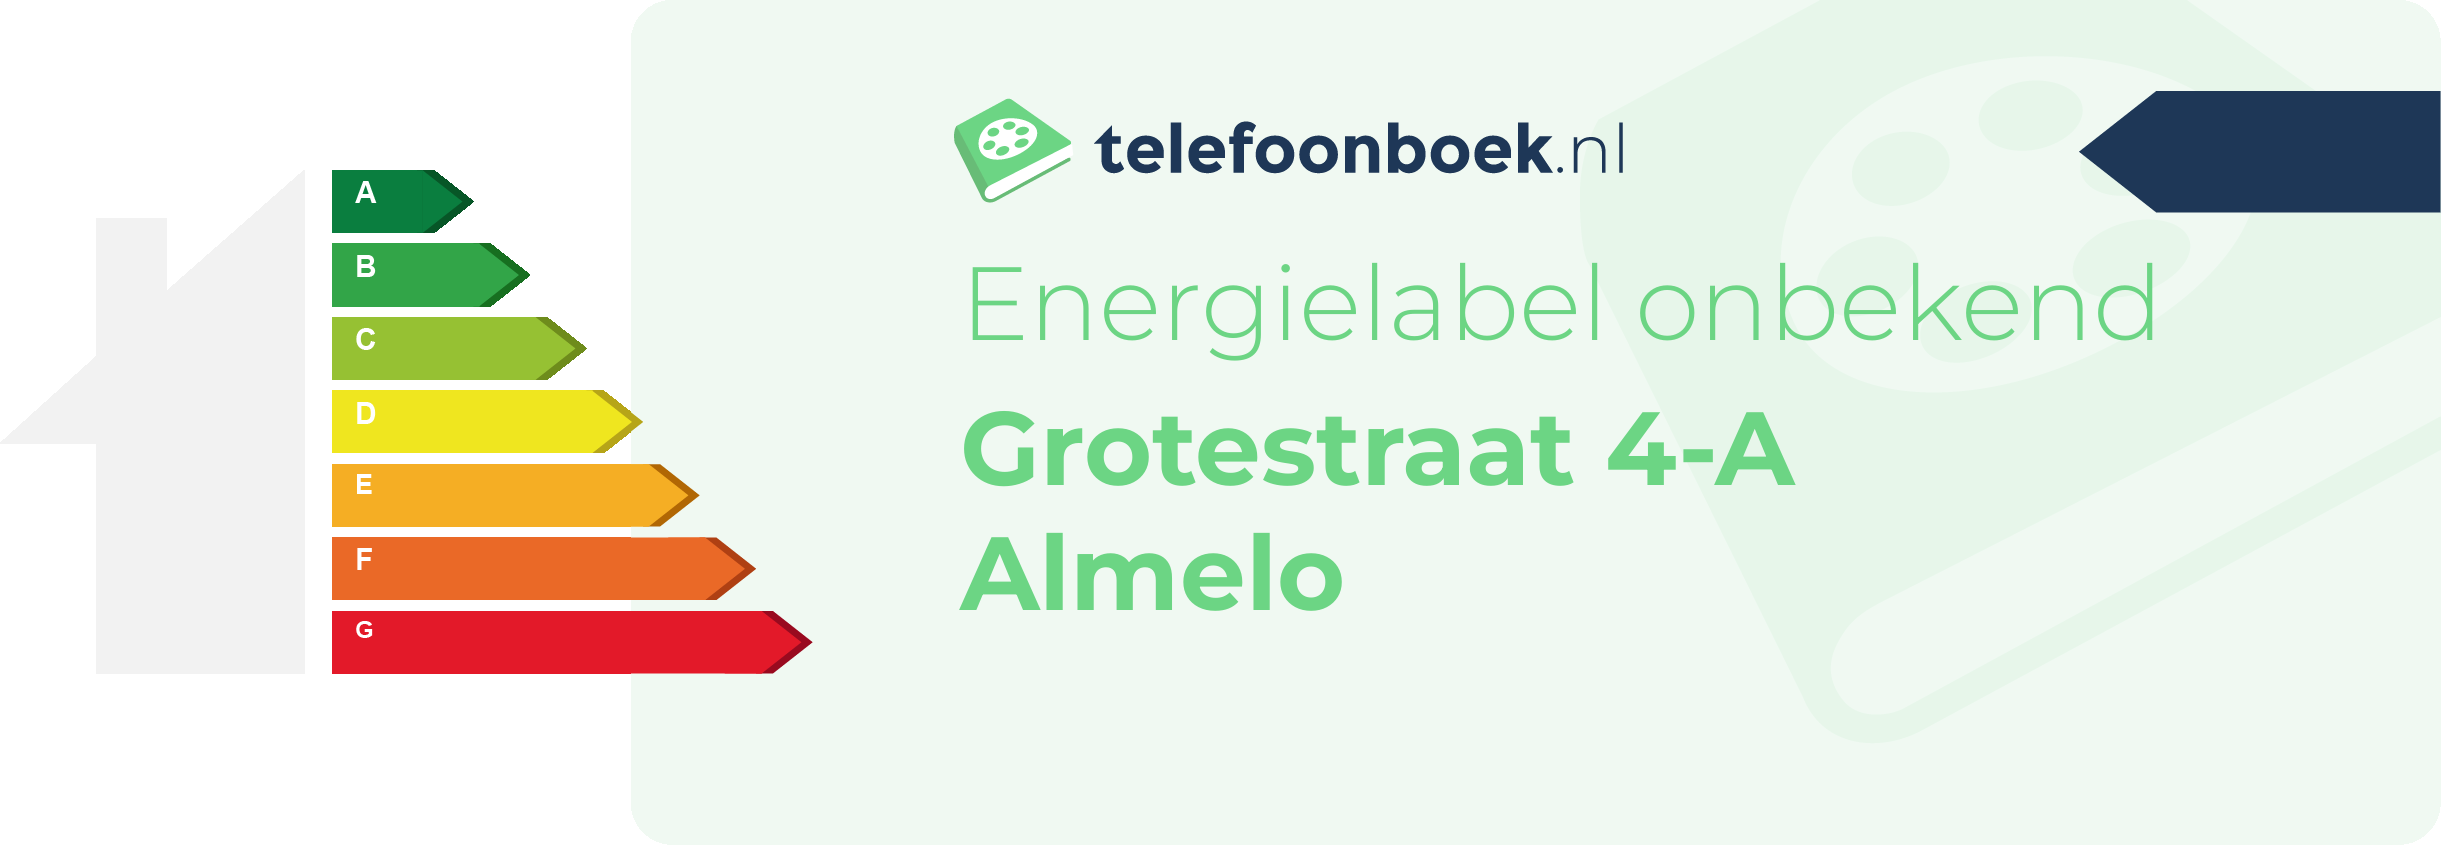 Energielabel Grotestraat 4-A Almelo